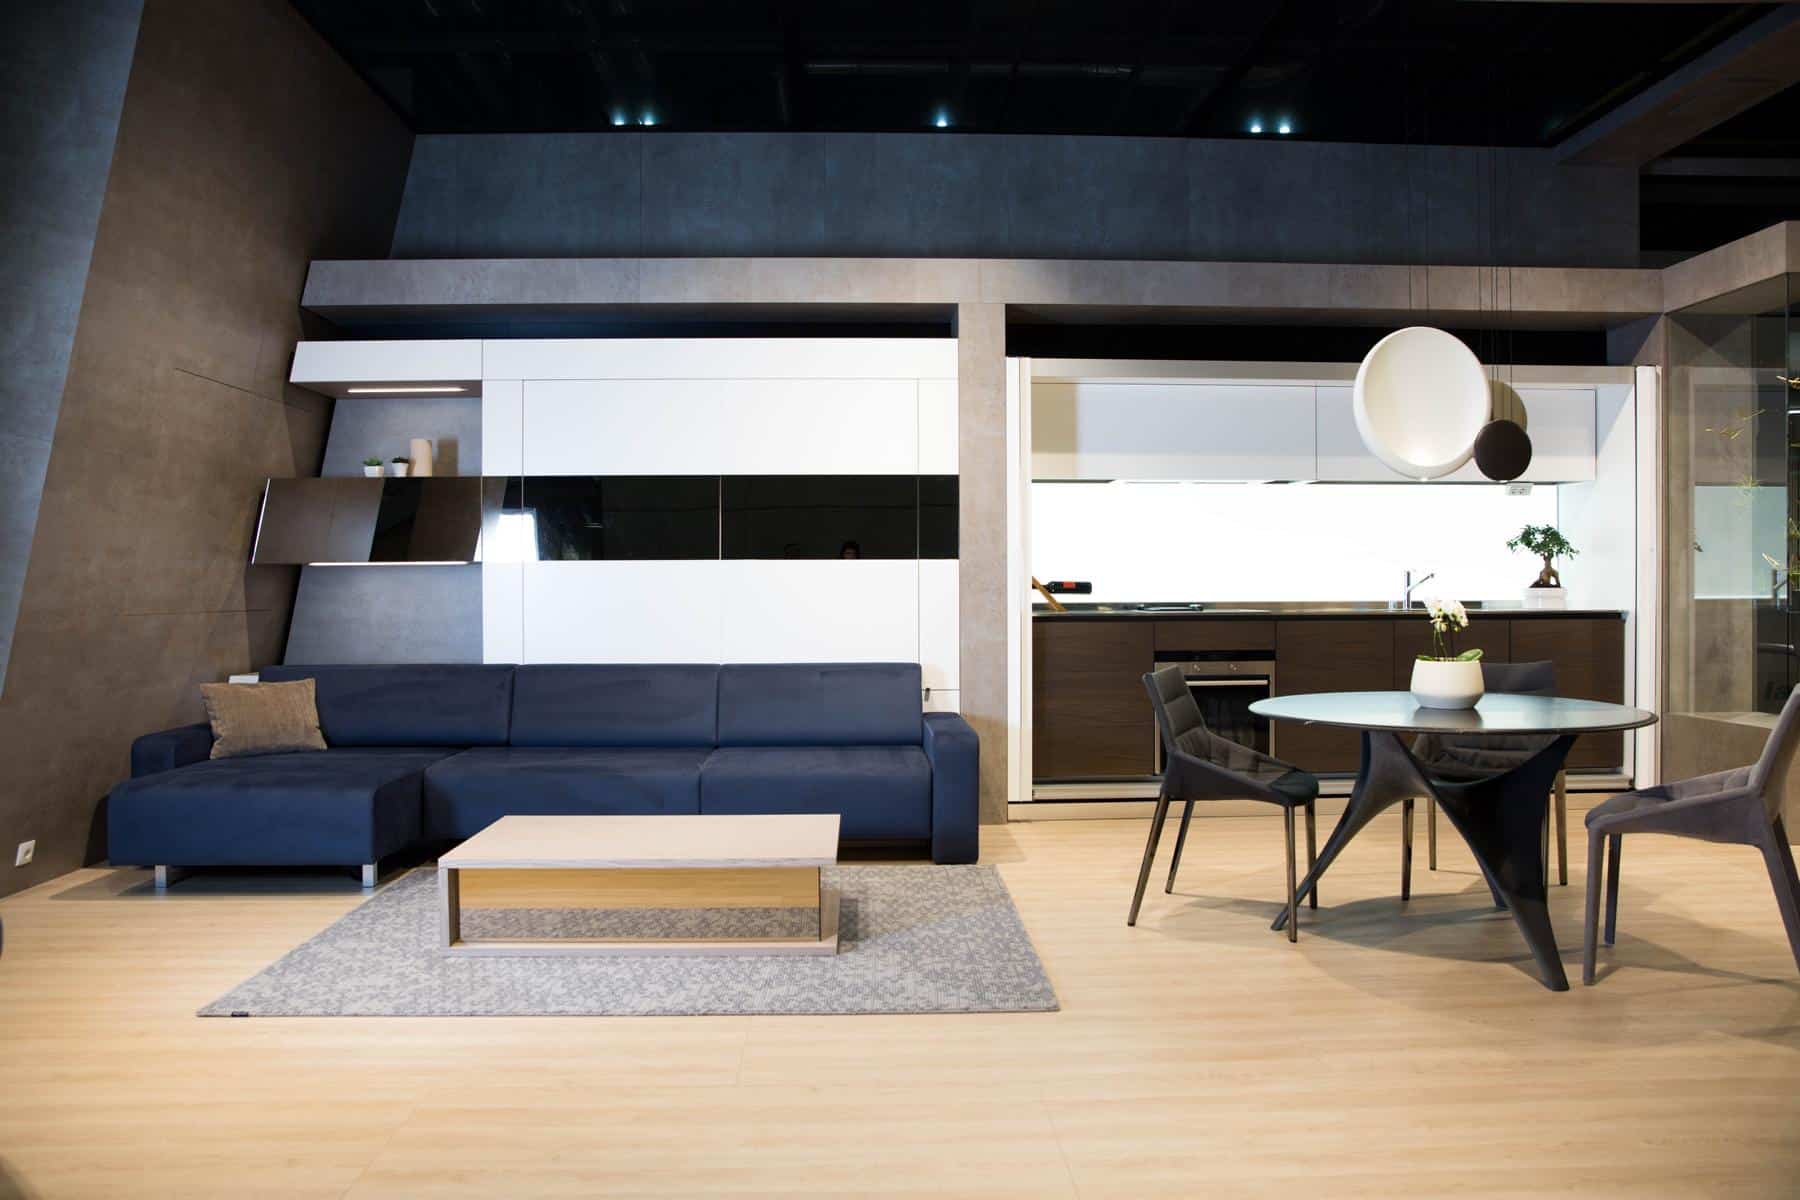 Ein modernes Wohnzimmer mit eleganten Möbeln und modernem Design, einem marineblauen Sofa, einem Couchtisch aus Holz und Glas und einer offenen Küche im Hintergrund, die auf der Messe 2016 vorgestellt wurde